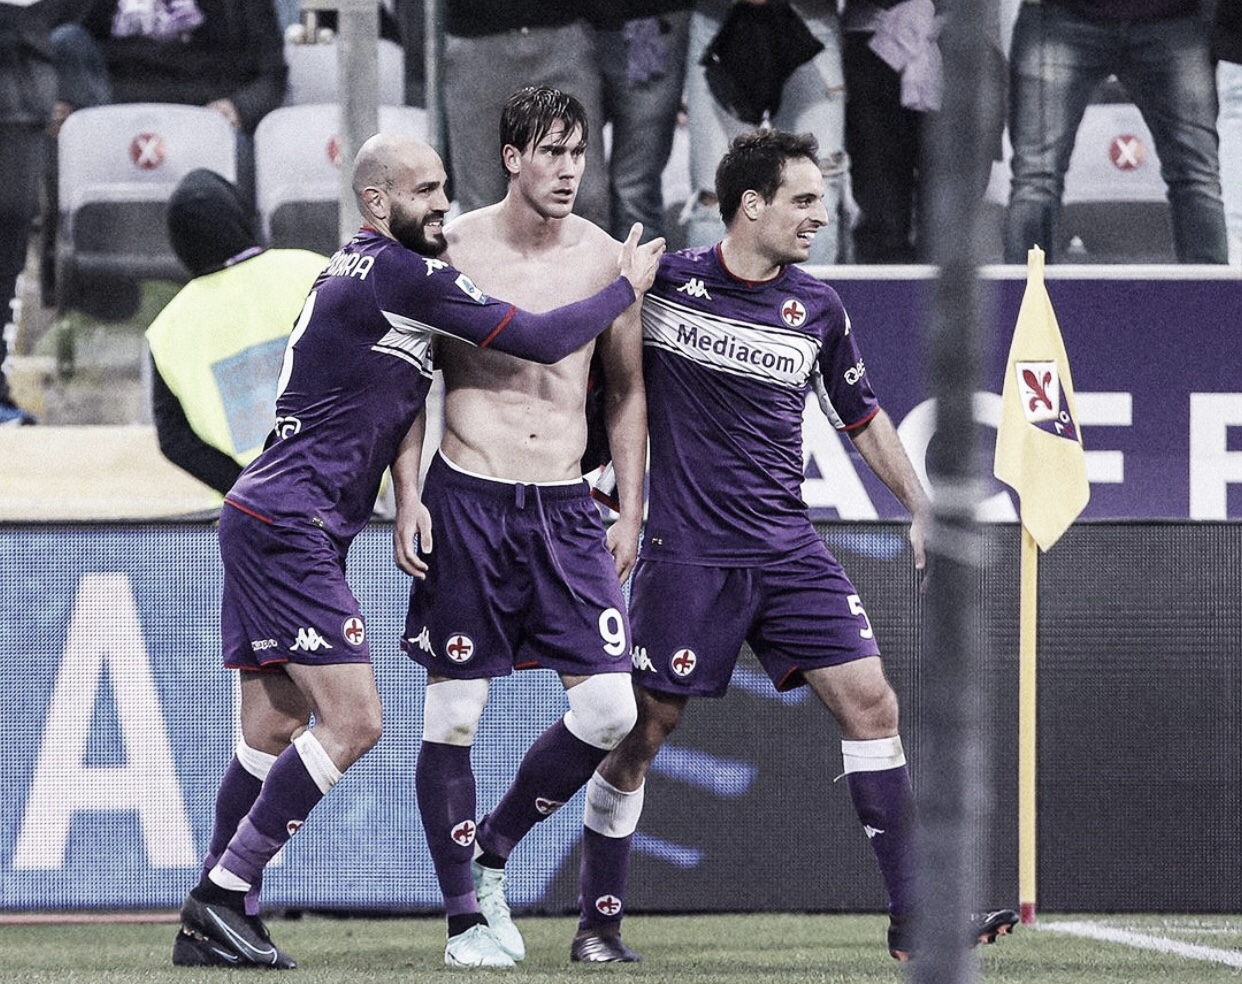 Com triplete de Vlahovic, Fiorentina tem atuação dominante e bate Spezia